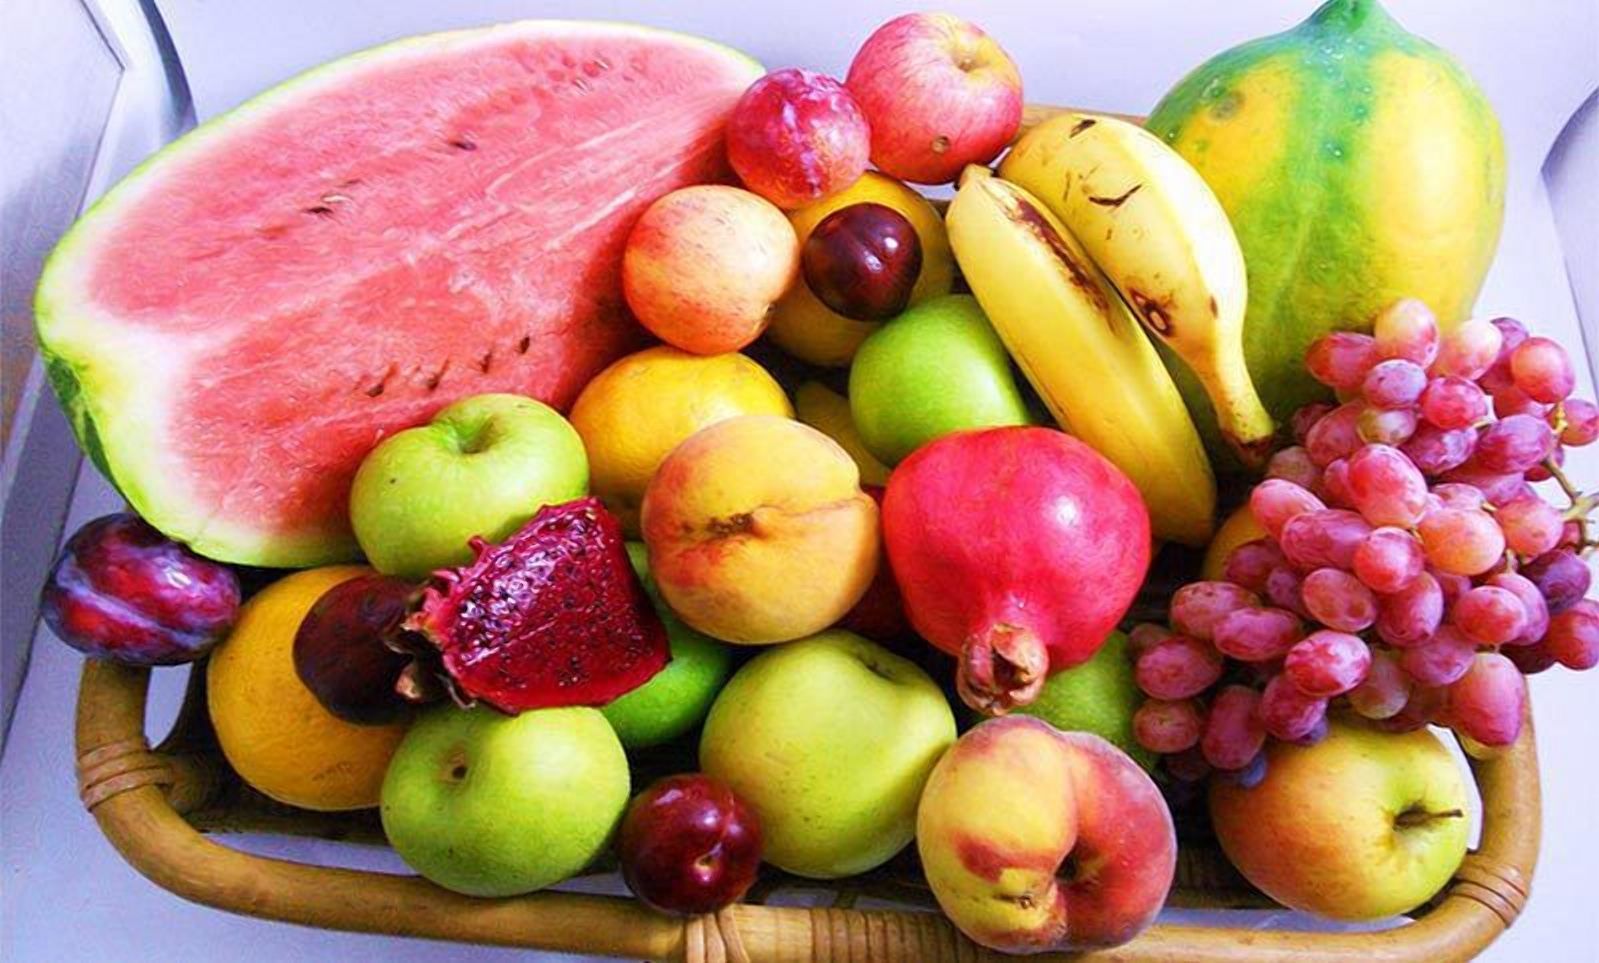 Украинцы едят мало фруктов: на сколько показатель ниже нормы - Агро